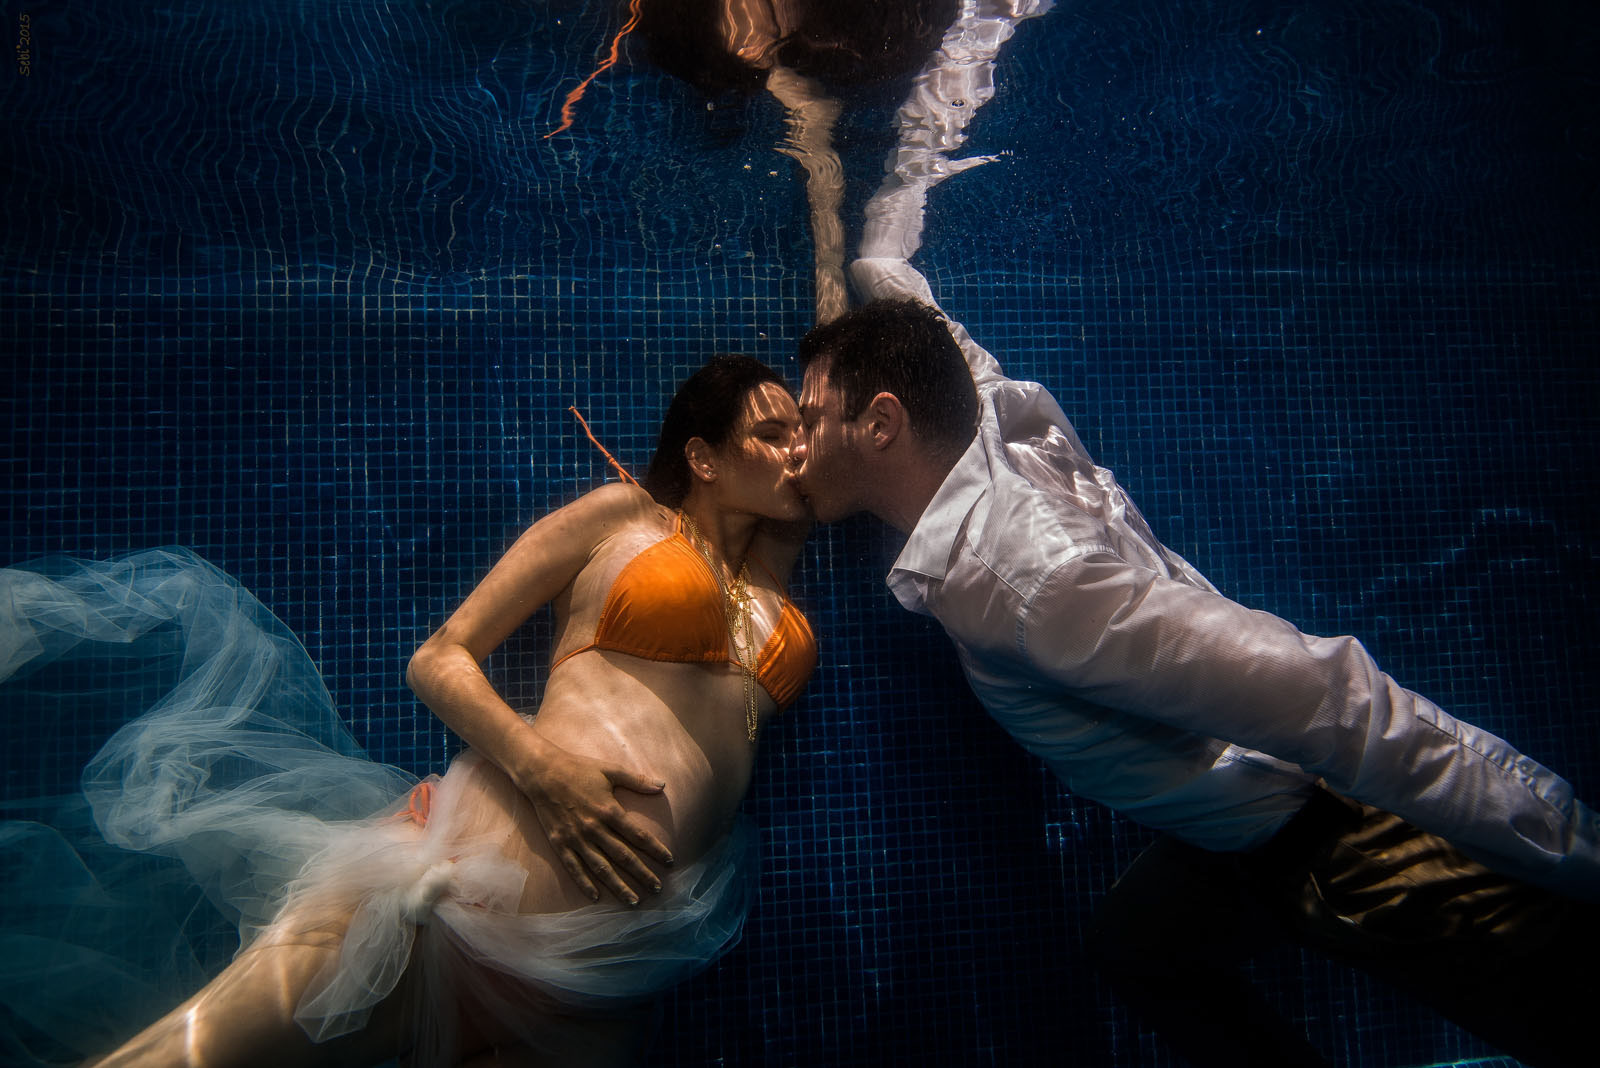 Pregnancy Underwater